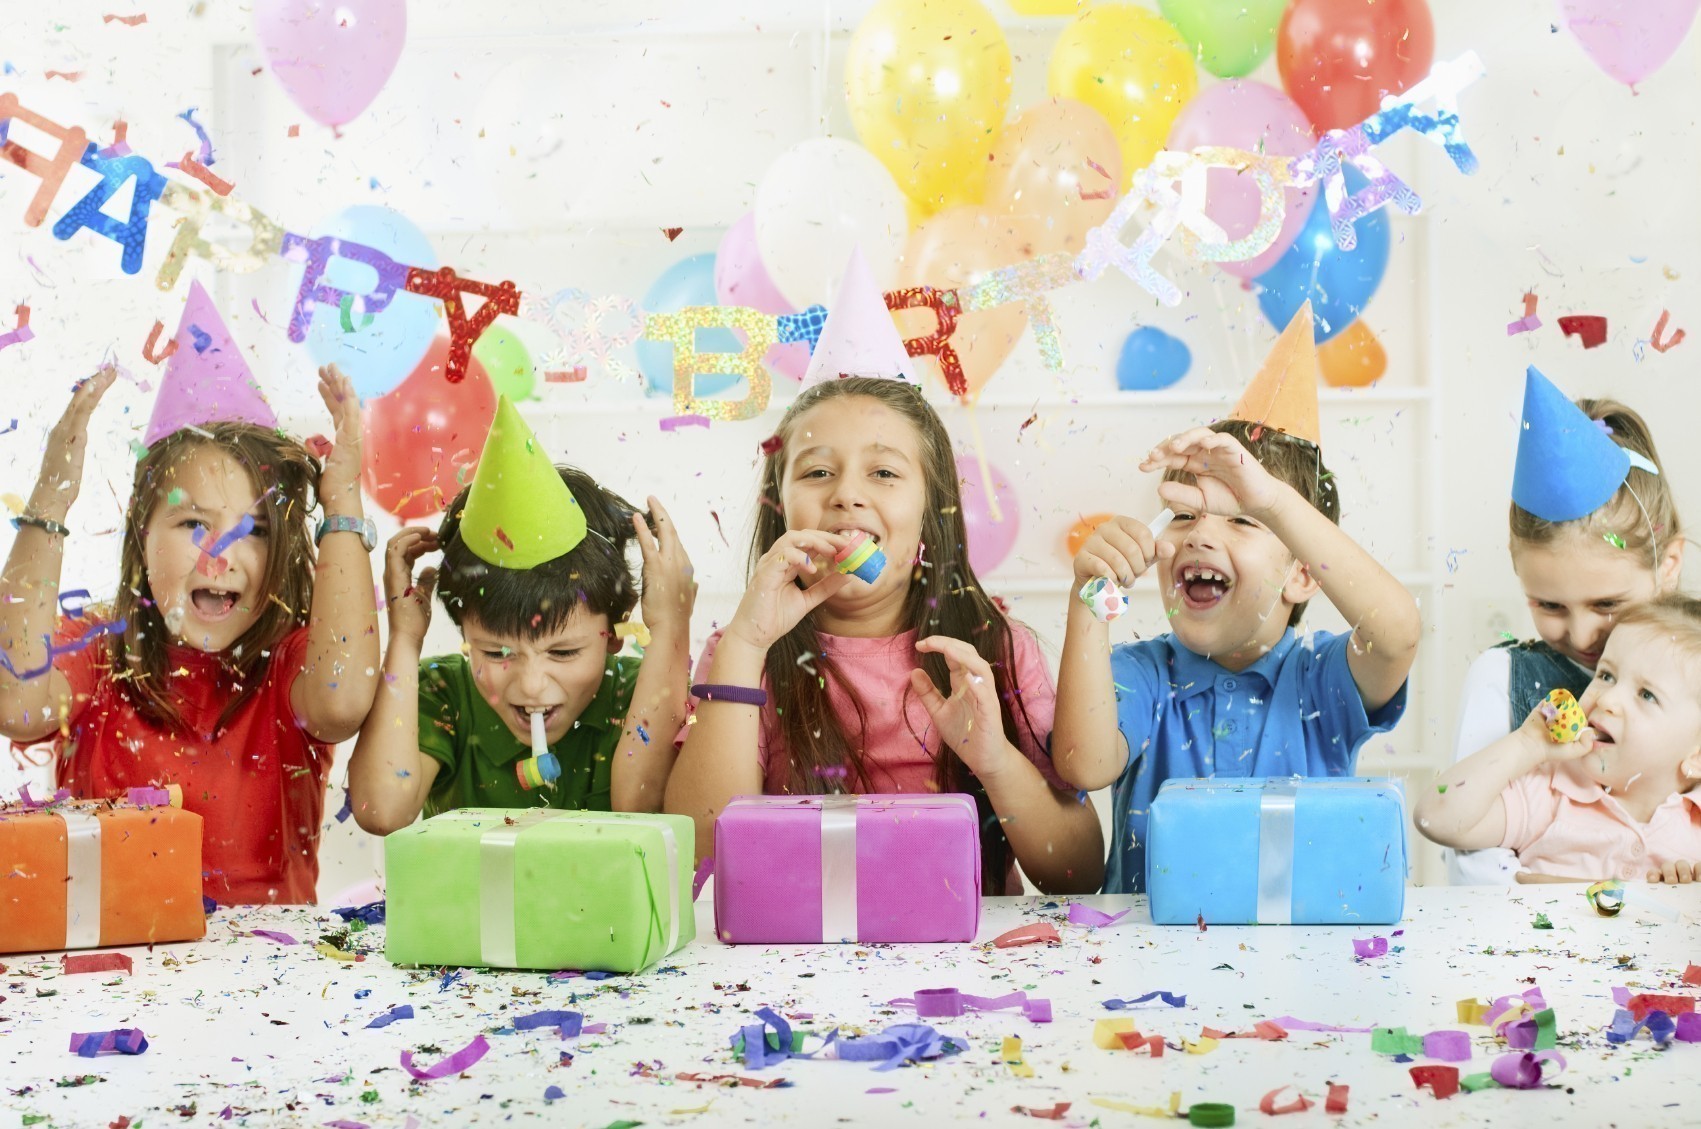 Серпантин идей - детские праздники – весело, задорно, оригинально! // как весело интересно и незабываемо провести детские праздники и как правильно их организовать